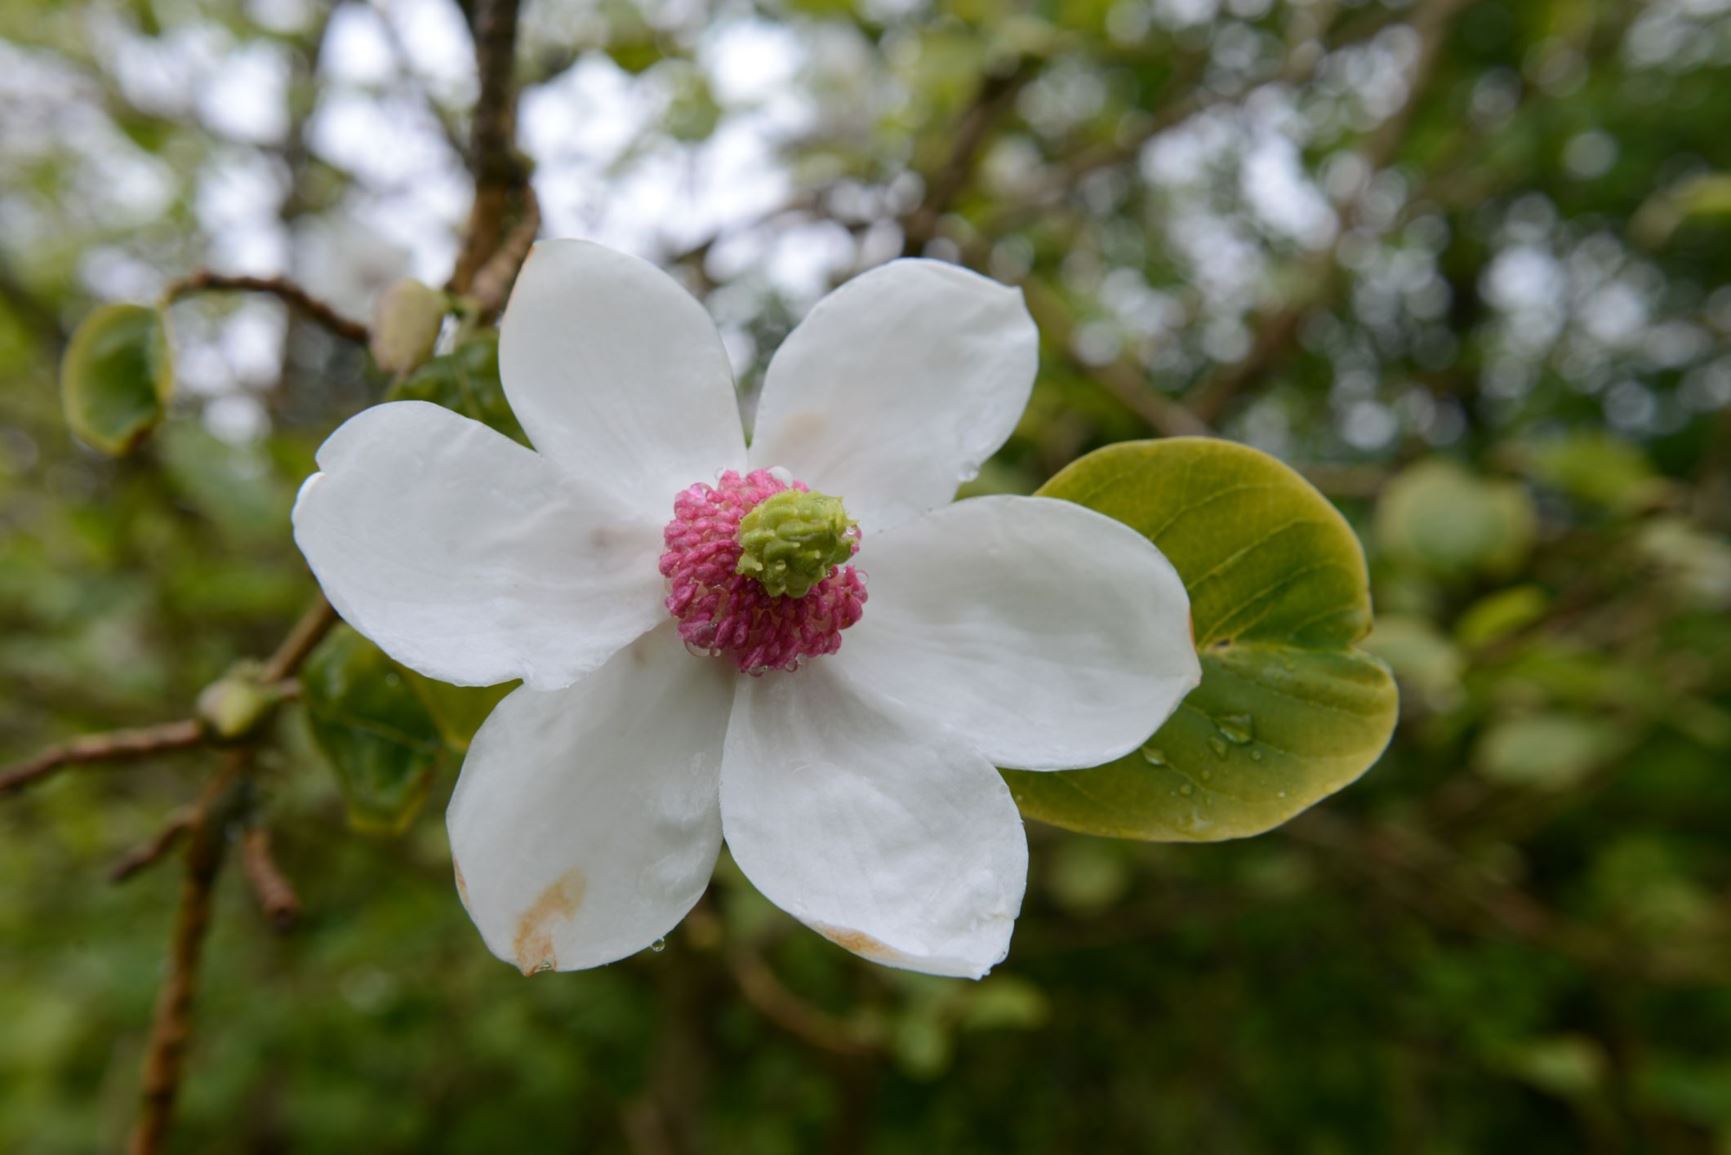 Magnolia sieboldii - Junimagnolia, Sieboldmagnolia, Japanmagnolia